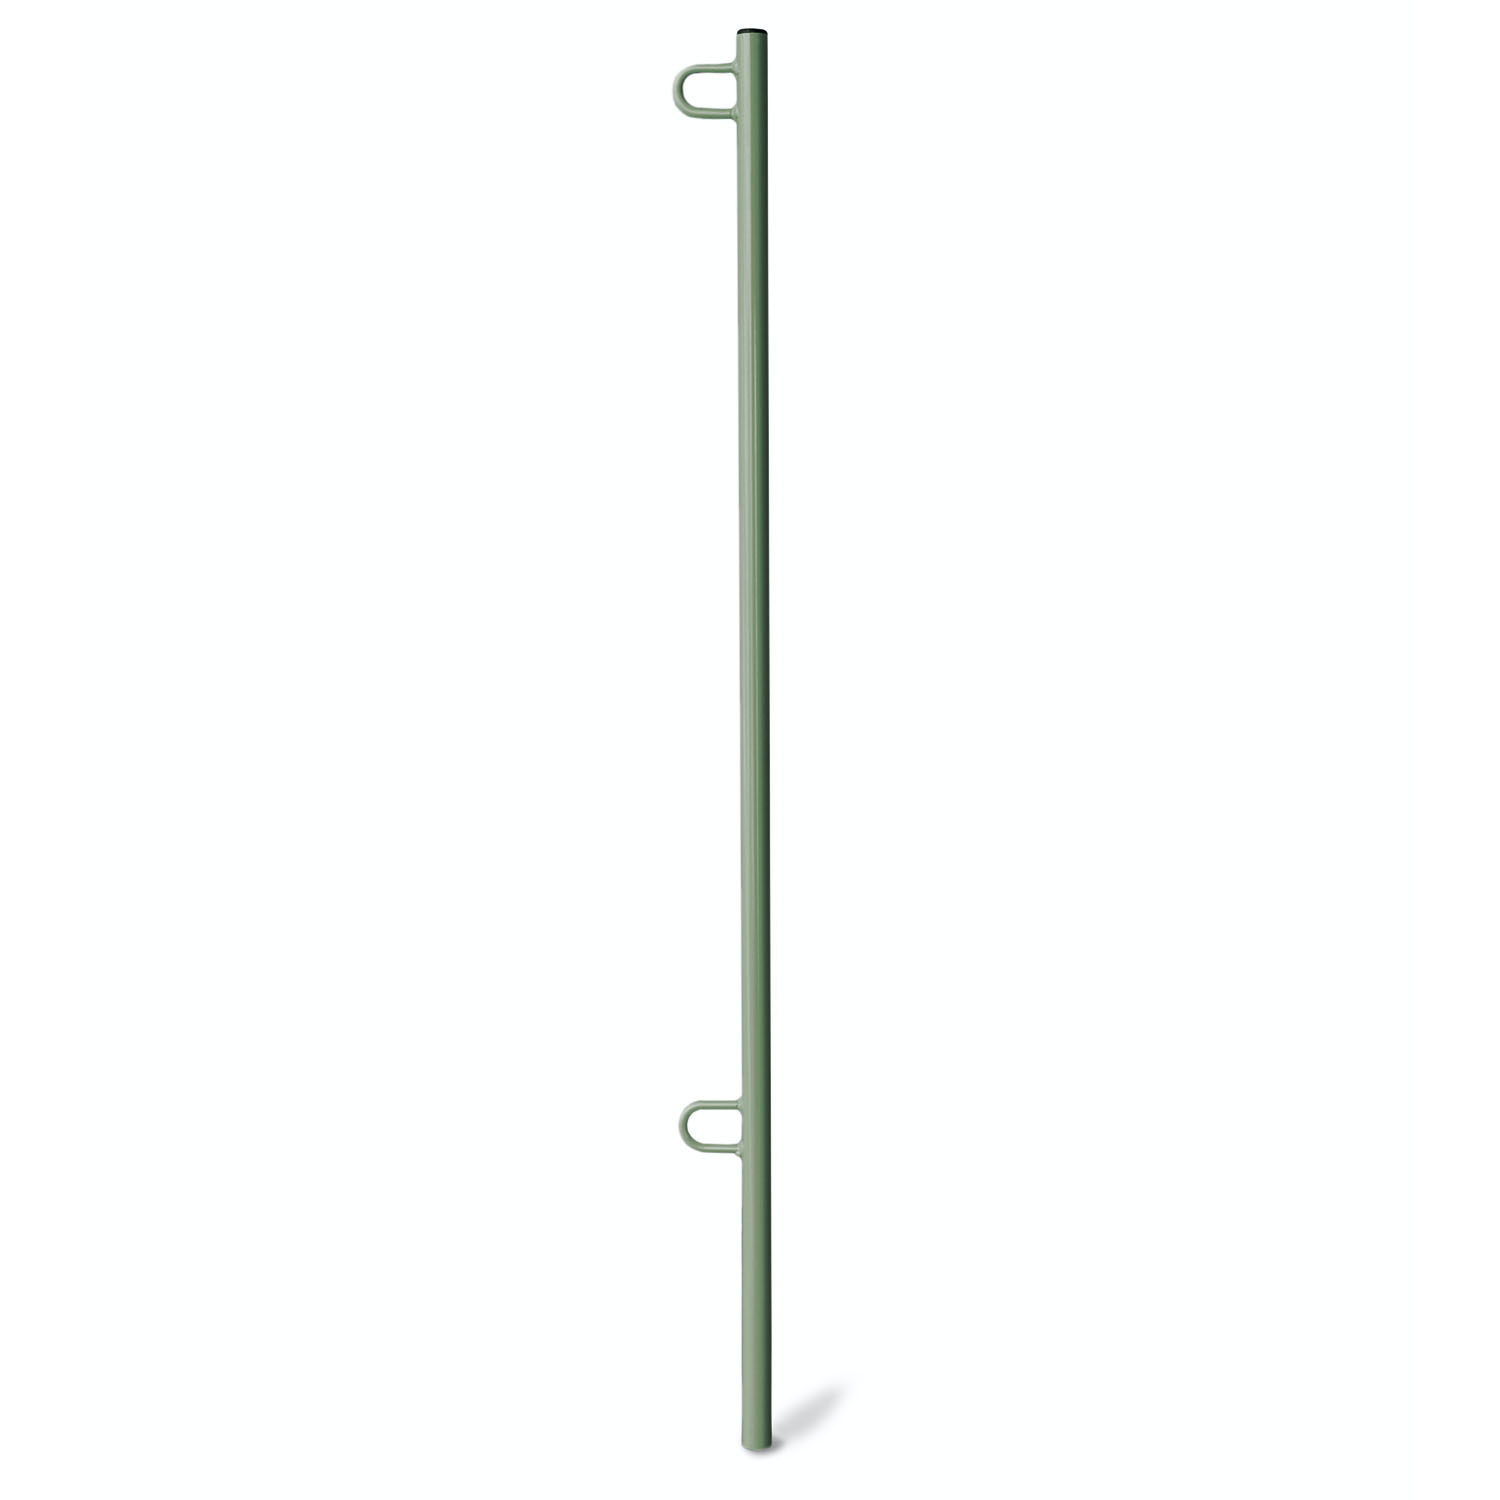 Flag Pole 3.8 feet Locas Green